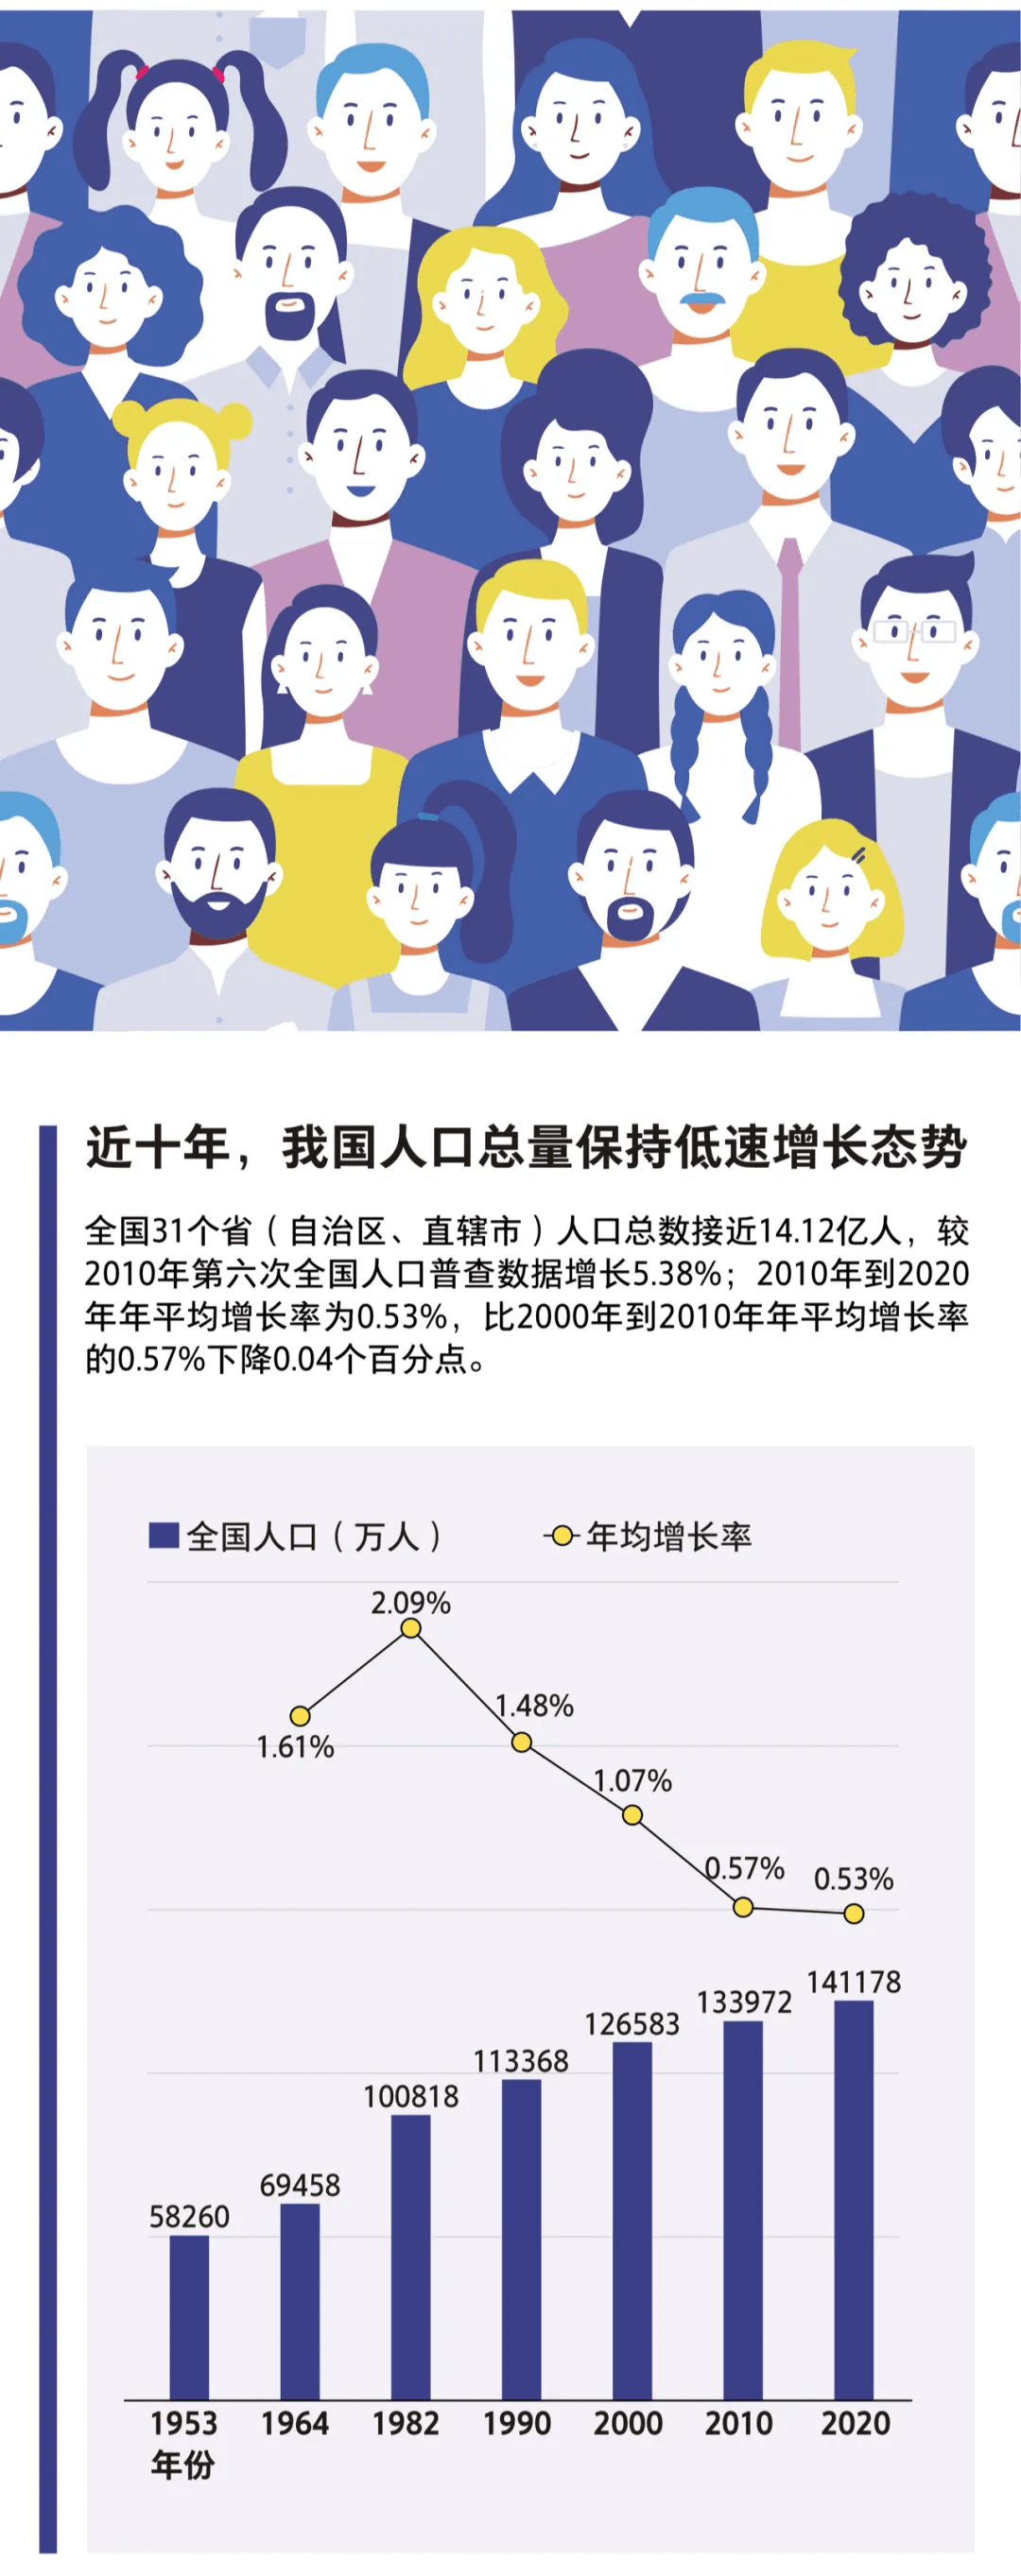 一图读懂中国人口现状:这10个数据值得特别关注!